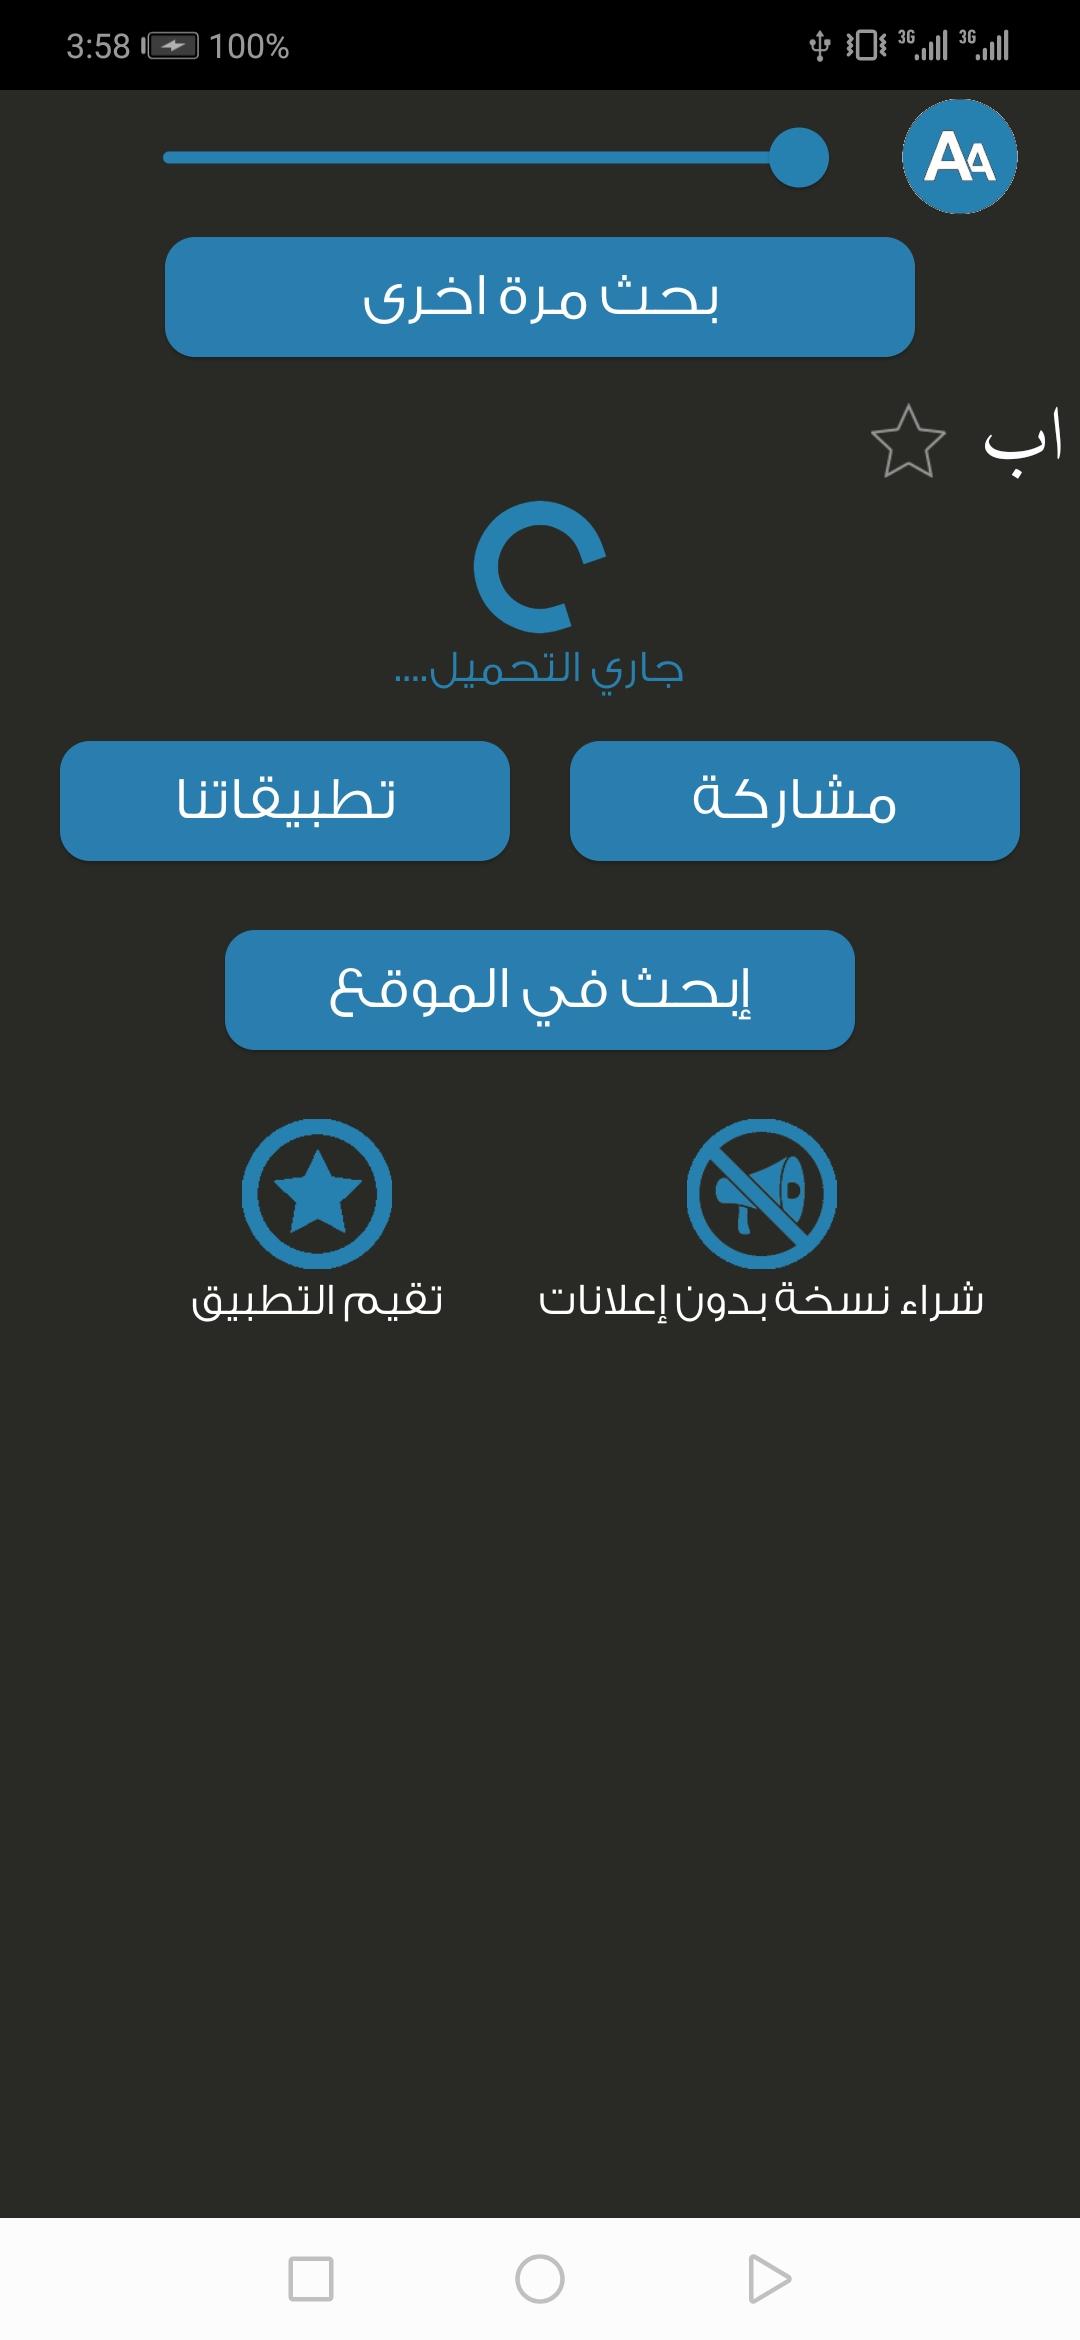 معجم المعاني عربي عربي + أحدث إصدار 4.5.4 للأندرويد